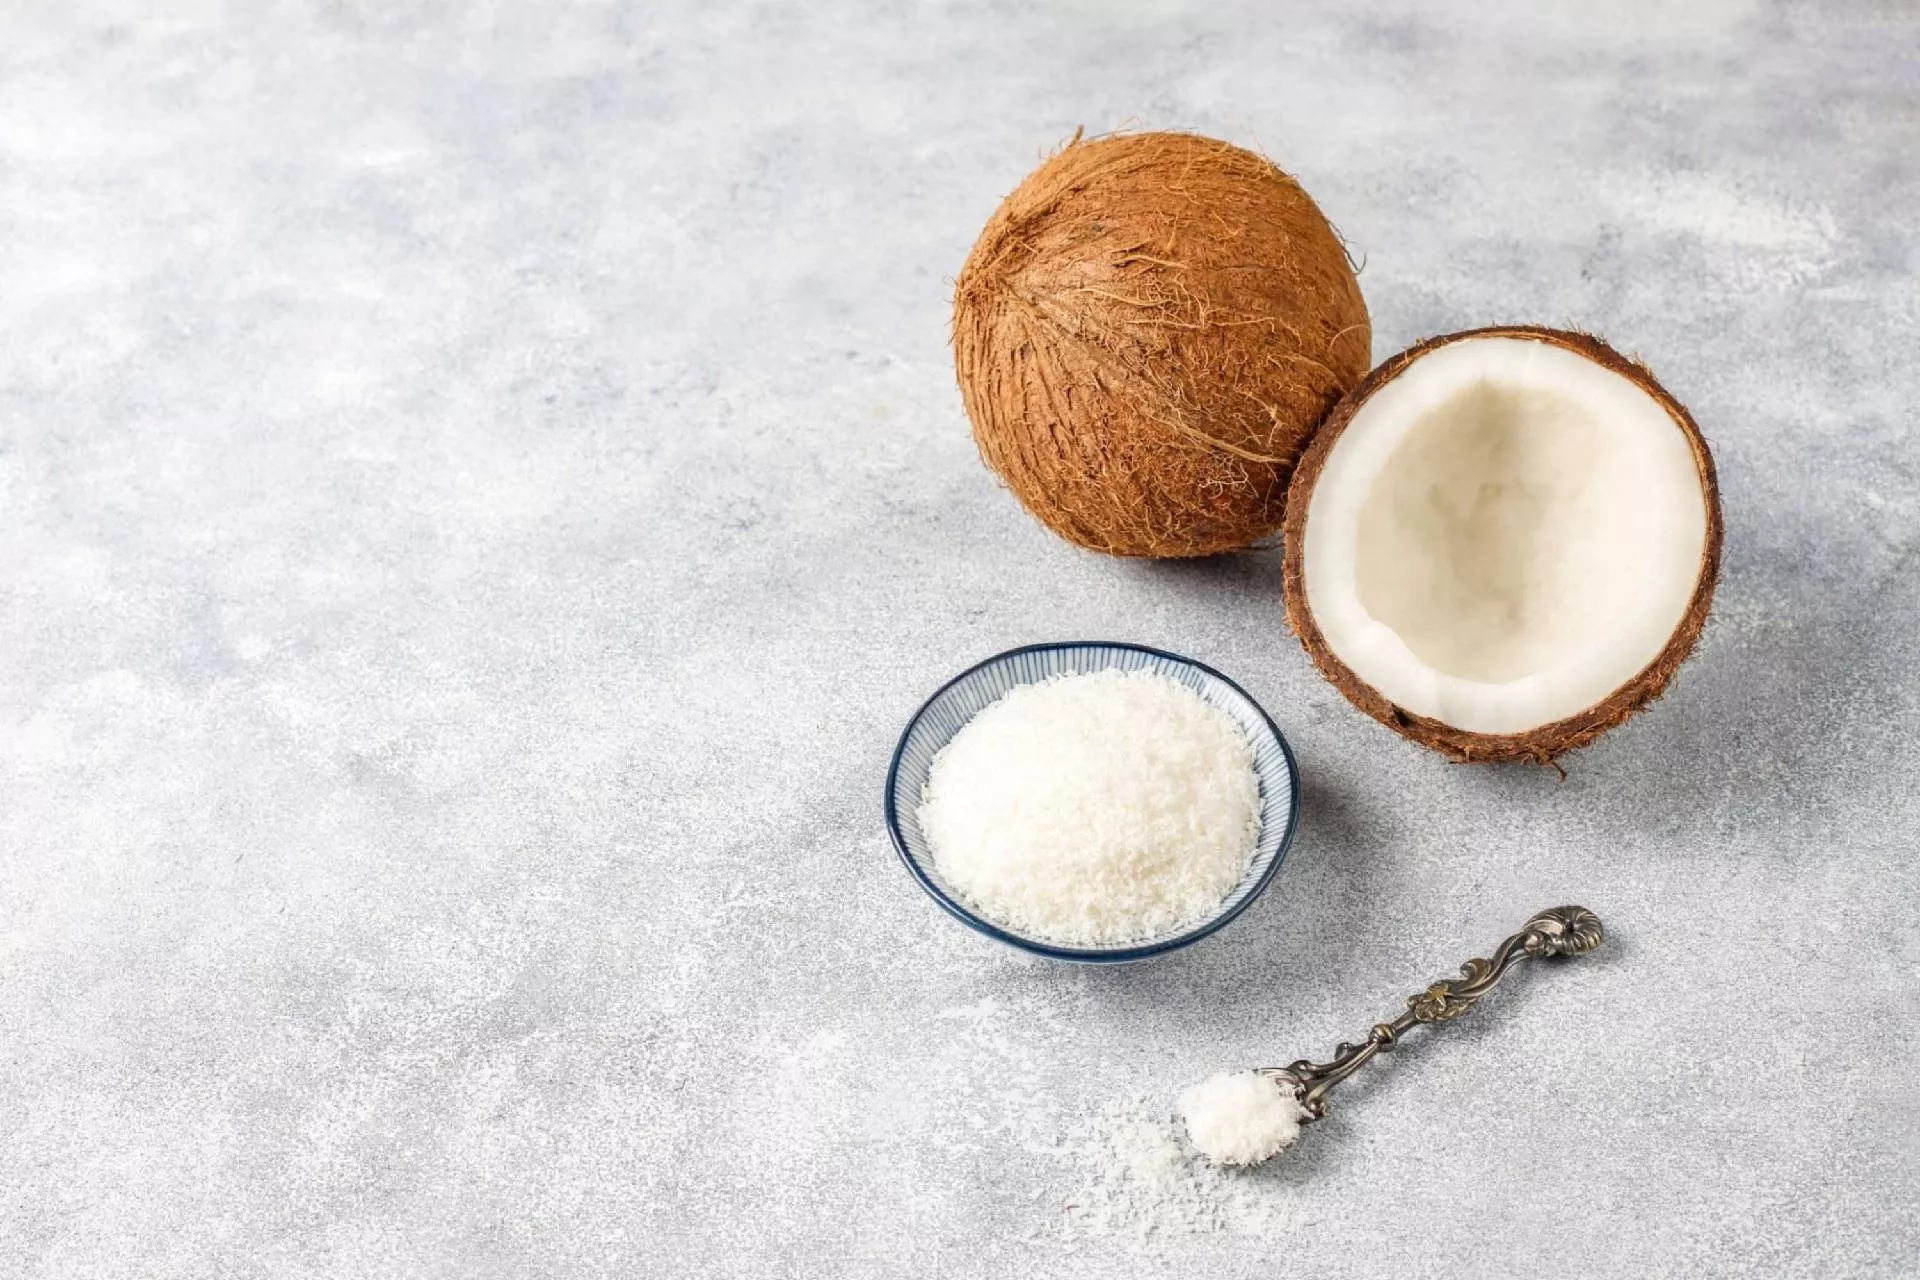 코코넛 가루는 무엇이며 어떻게 사용합니까?